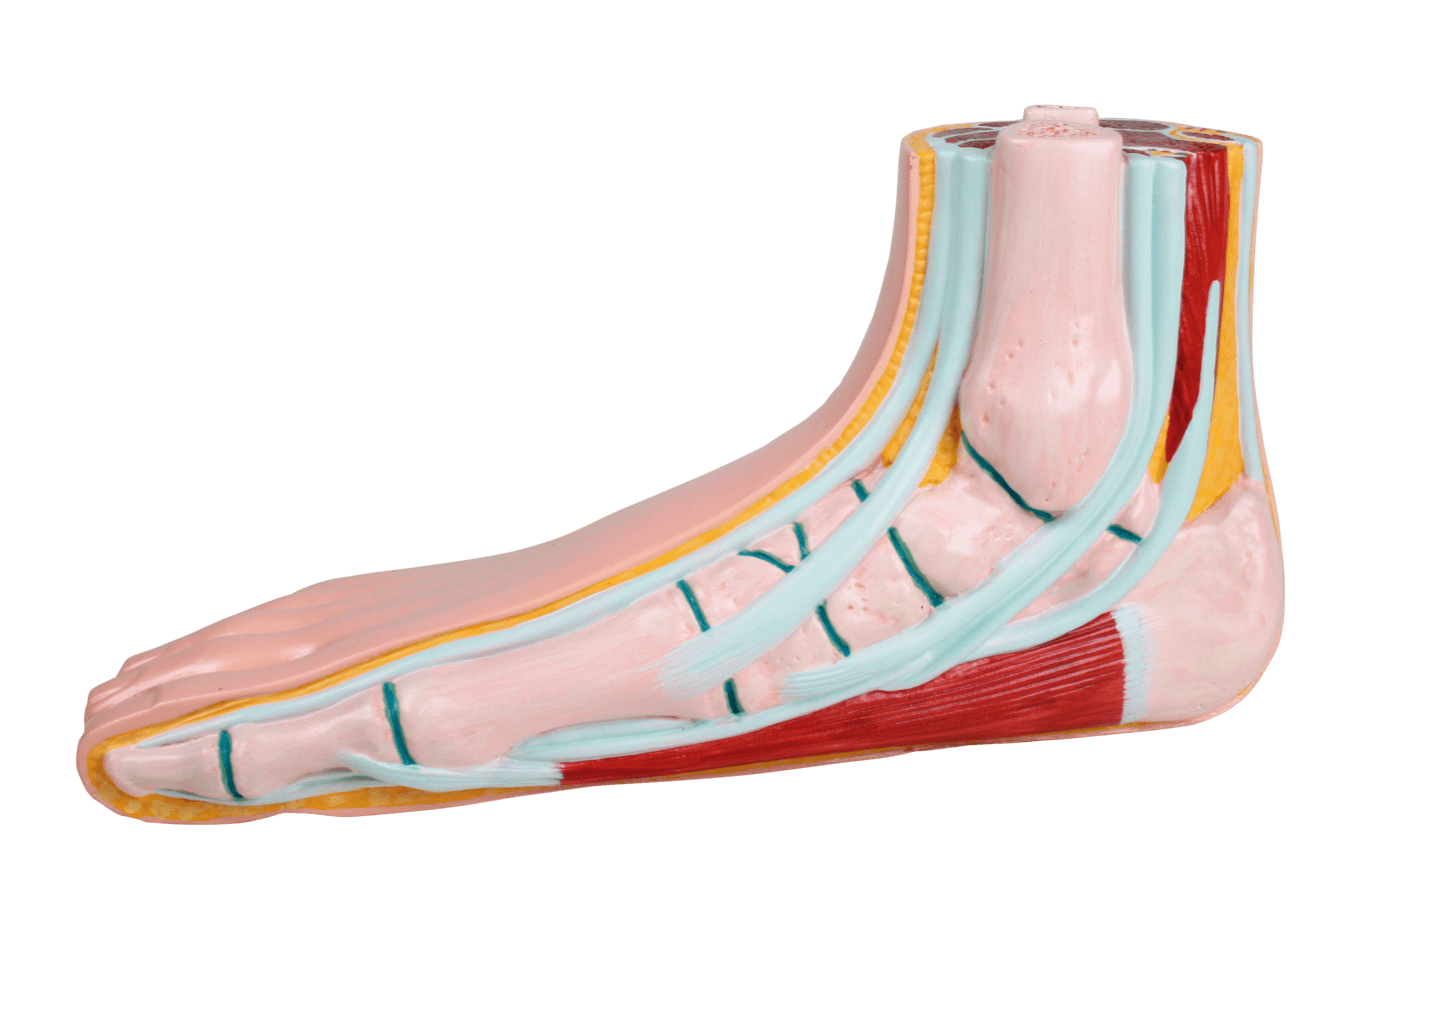 RUCK - Fußmodelle aus Kunststoff